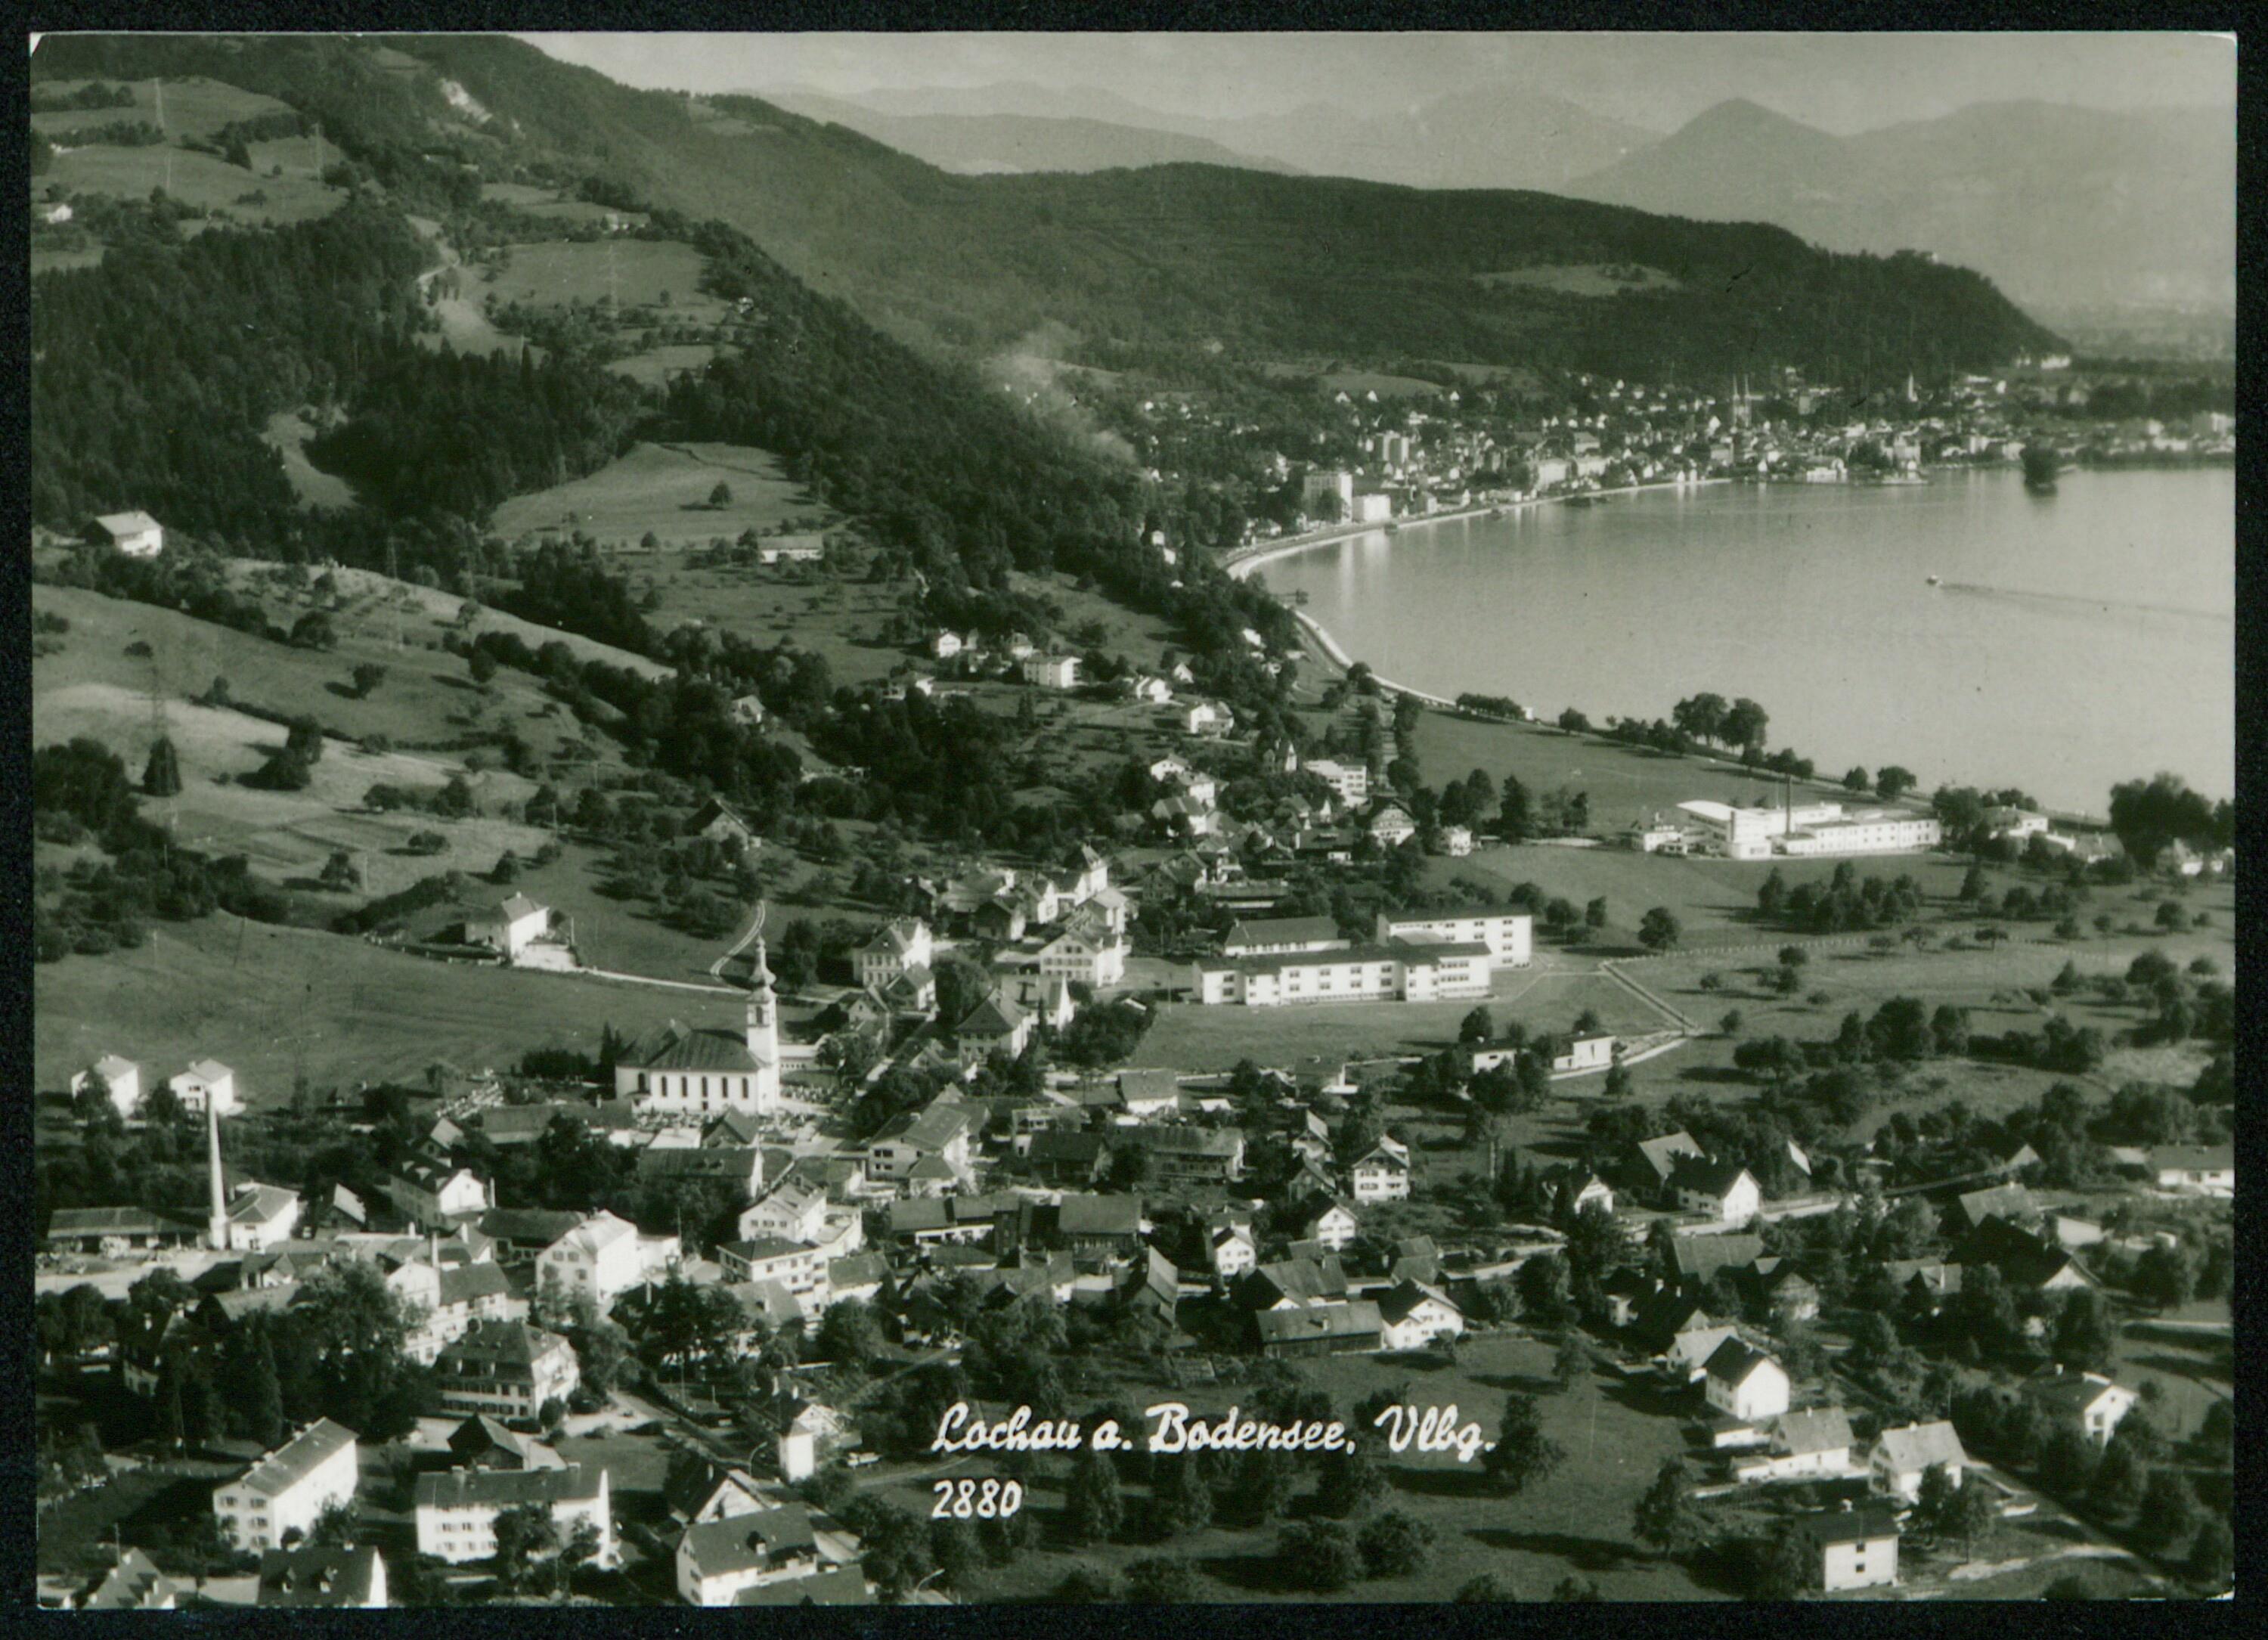 Lochau a. Bodensee, Vlbg.></div>


    <hr>
    <div class=